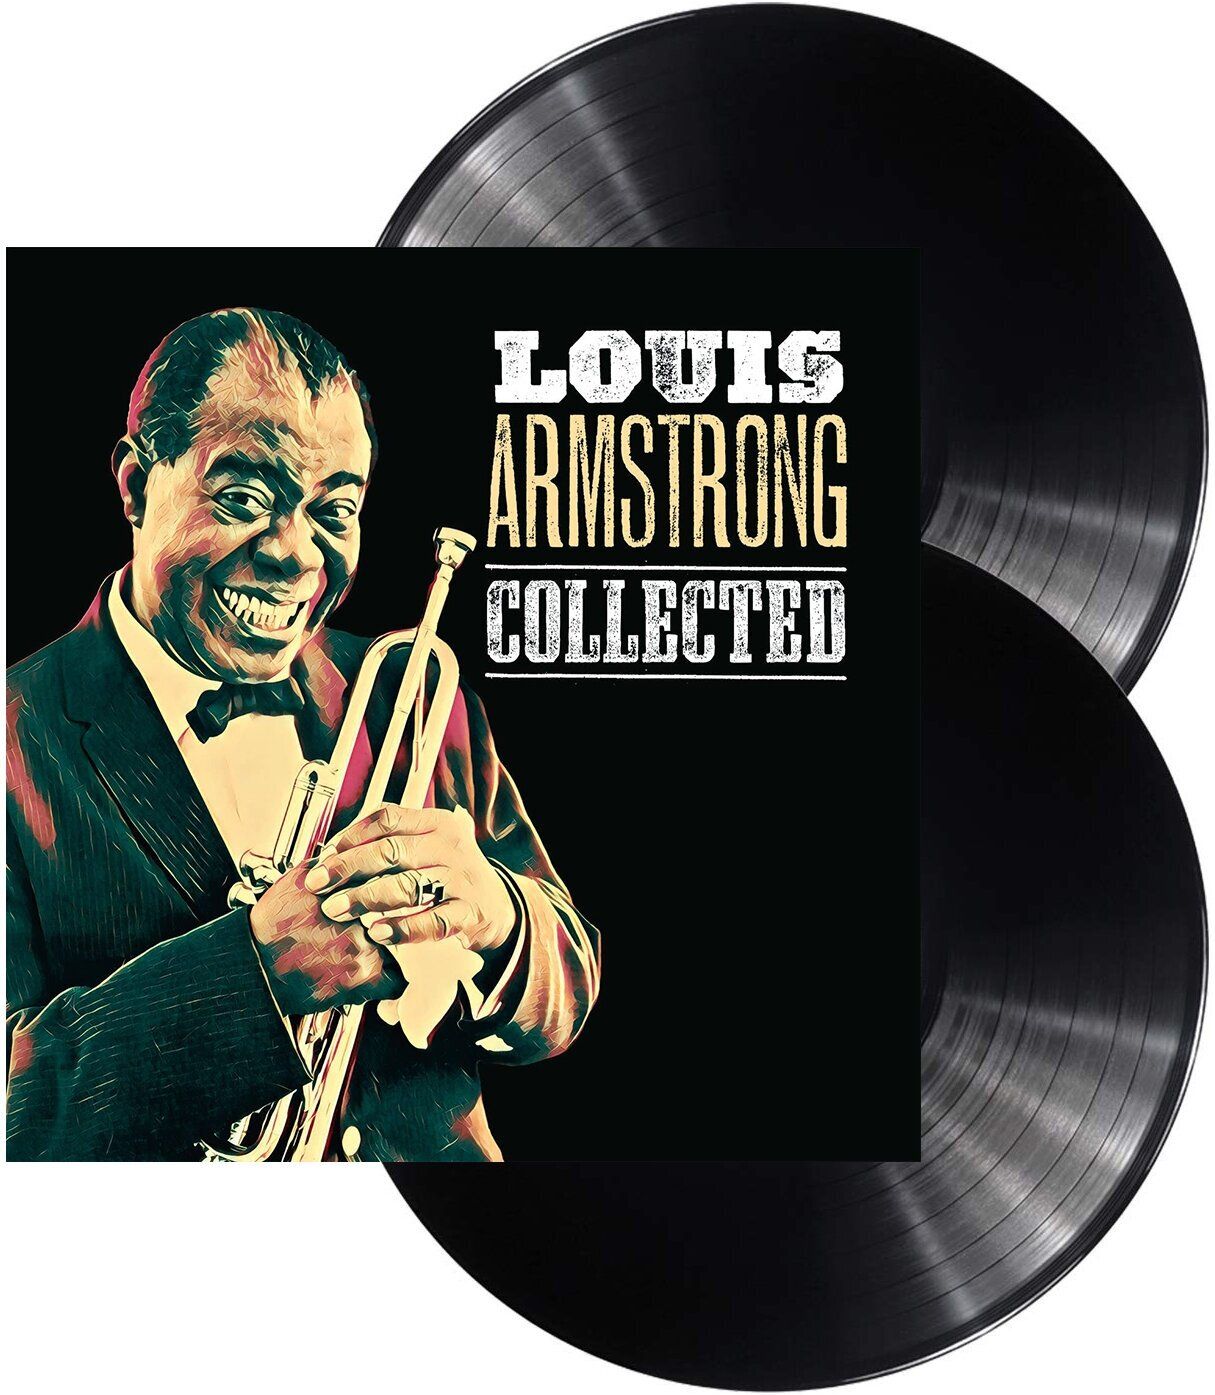 Виниловая пластинка Armstrong, Louis, Collected (0600753814345) мужская футболка джазовый трубач l красный